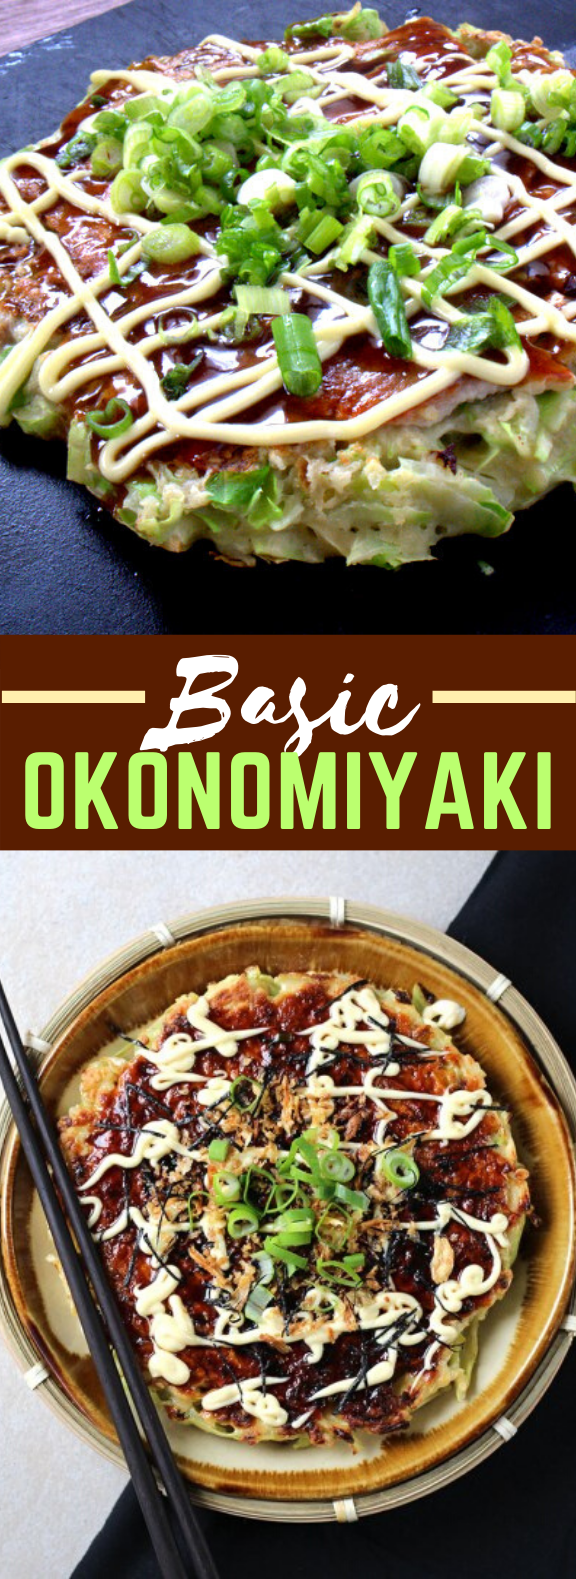 BASIC OKONOMIYAKI #dinner #japanesefood